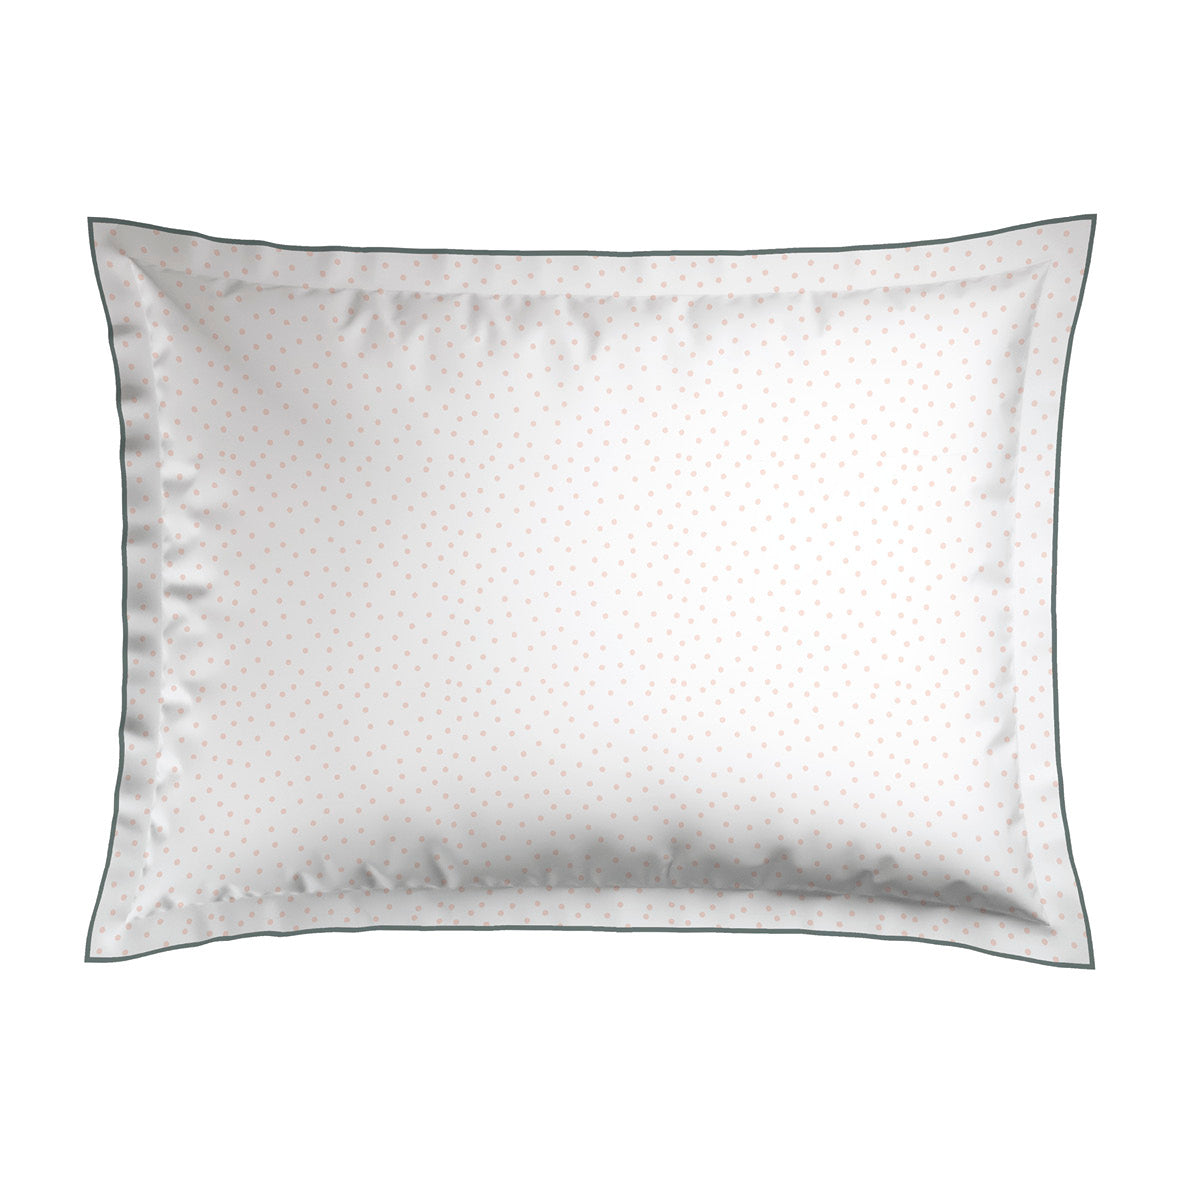 Pillowcases cotton satin - Peony white